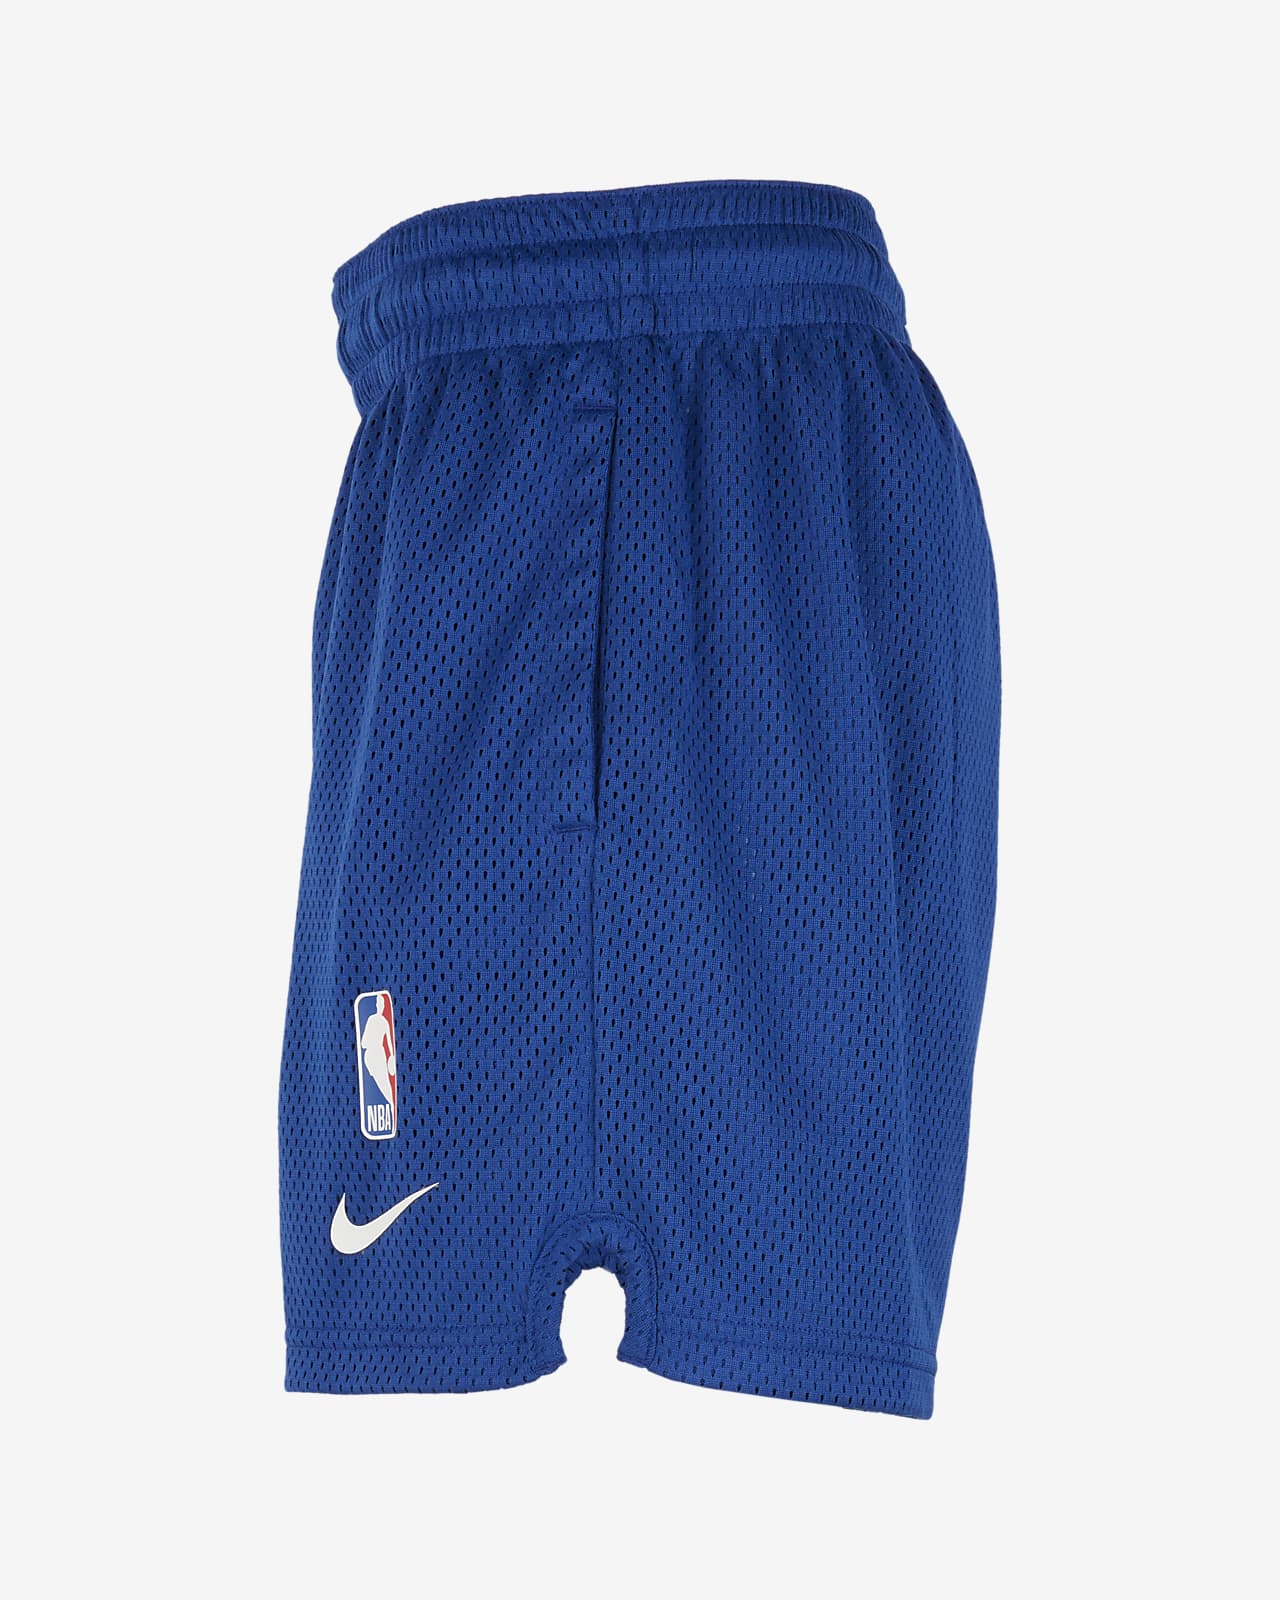 New York Knicks Spotlight Big Kids' Nike Dri-FIT NBA Shorts.